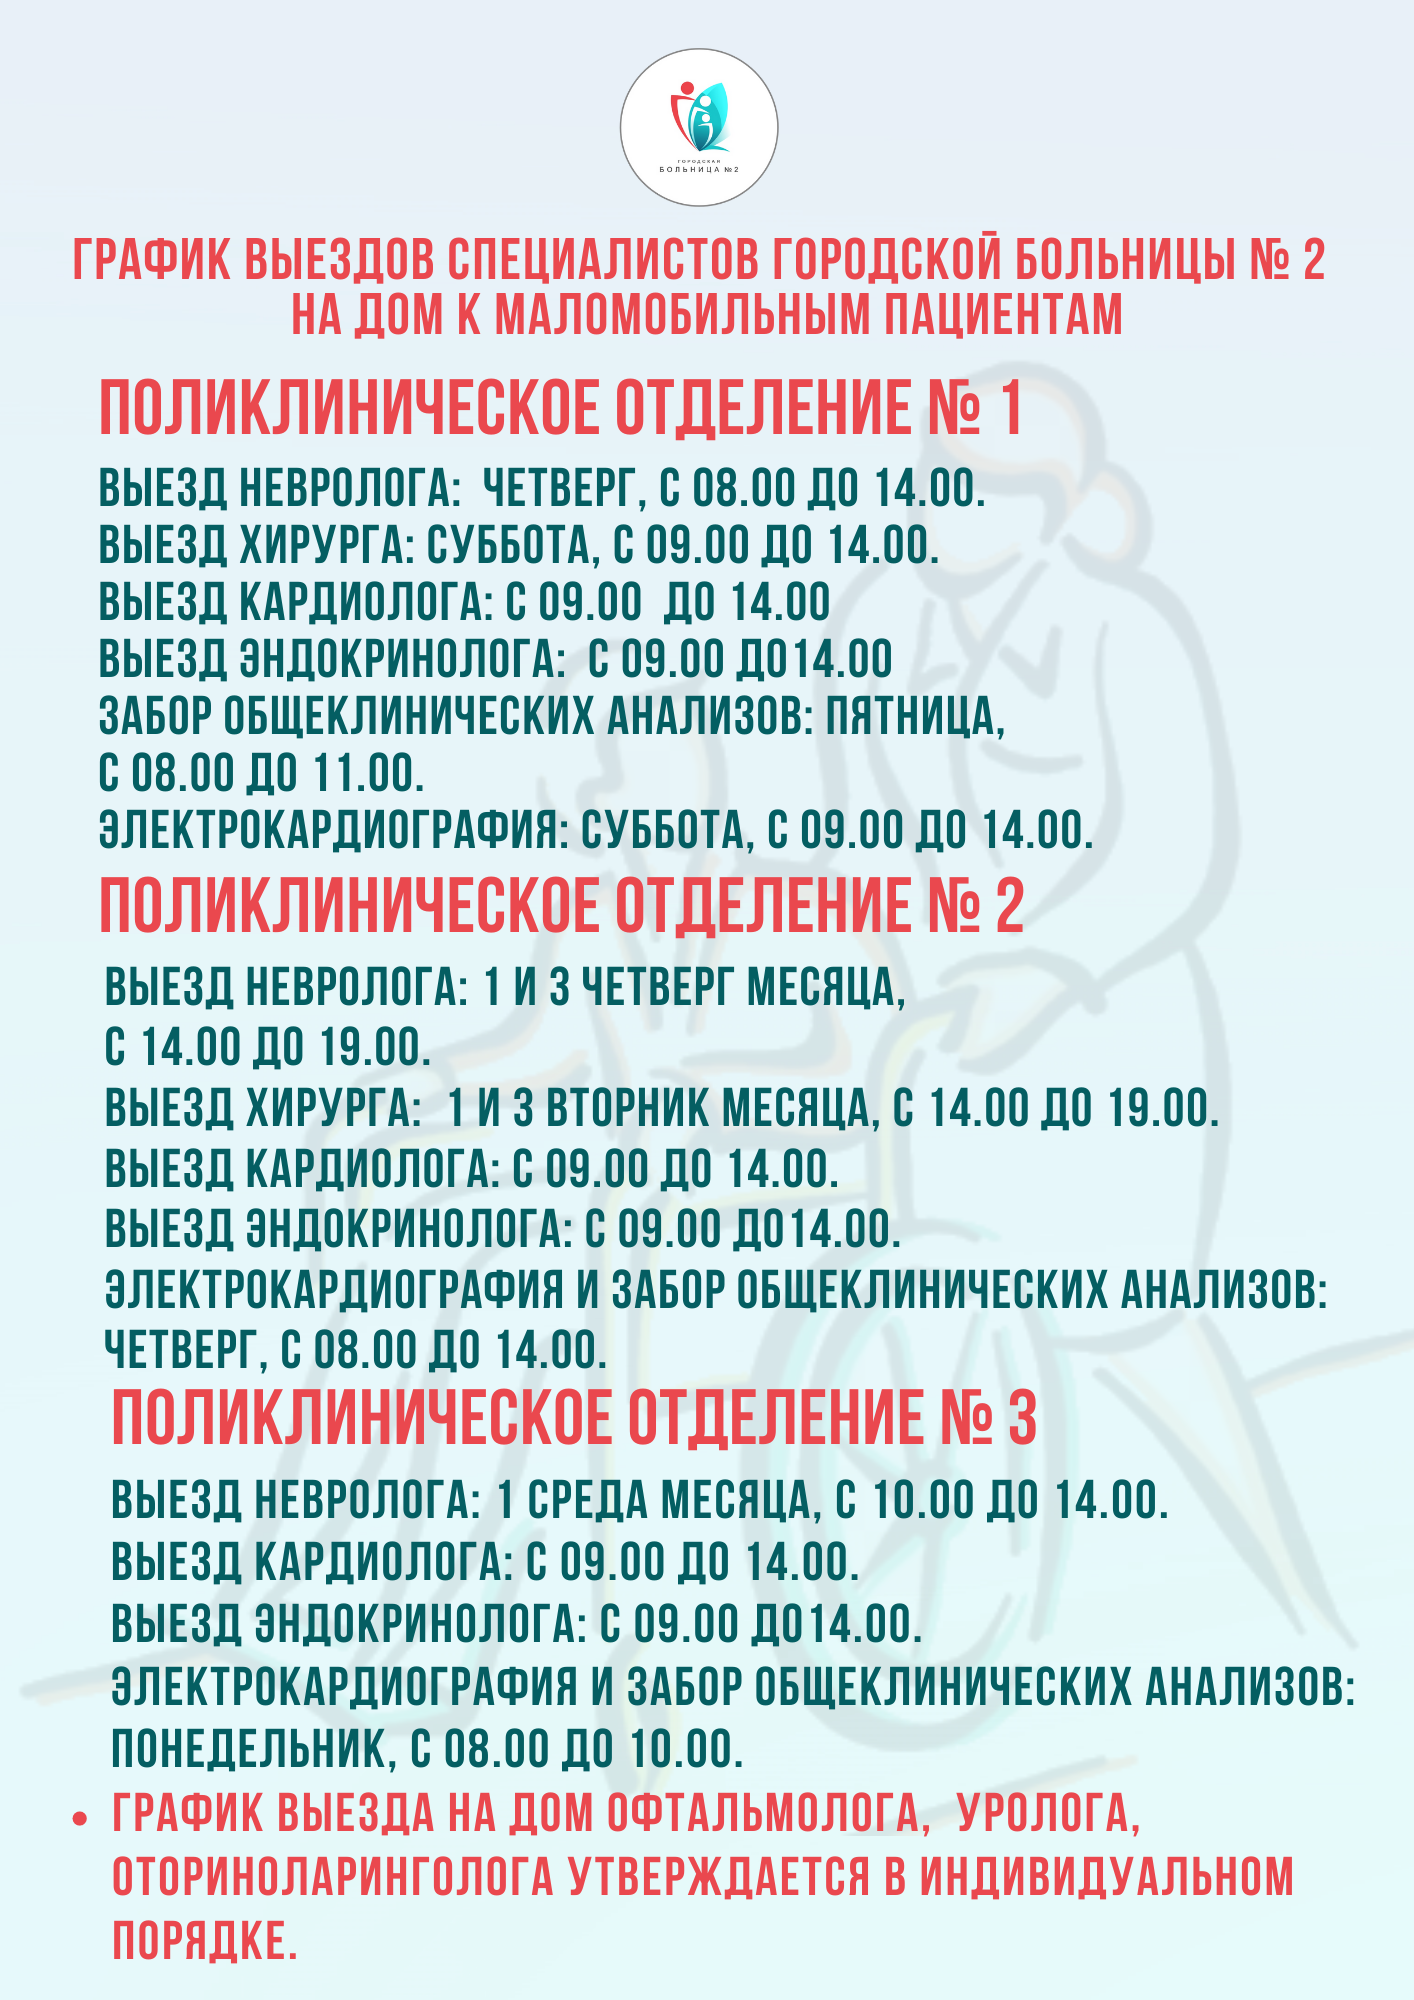 график выездов специалистов городской больницы № 2 на дом к маломобильным пациентам.png